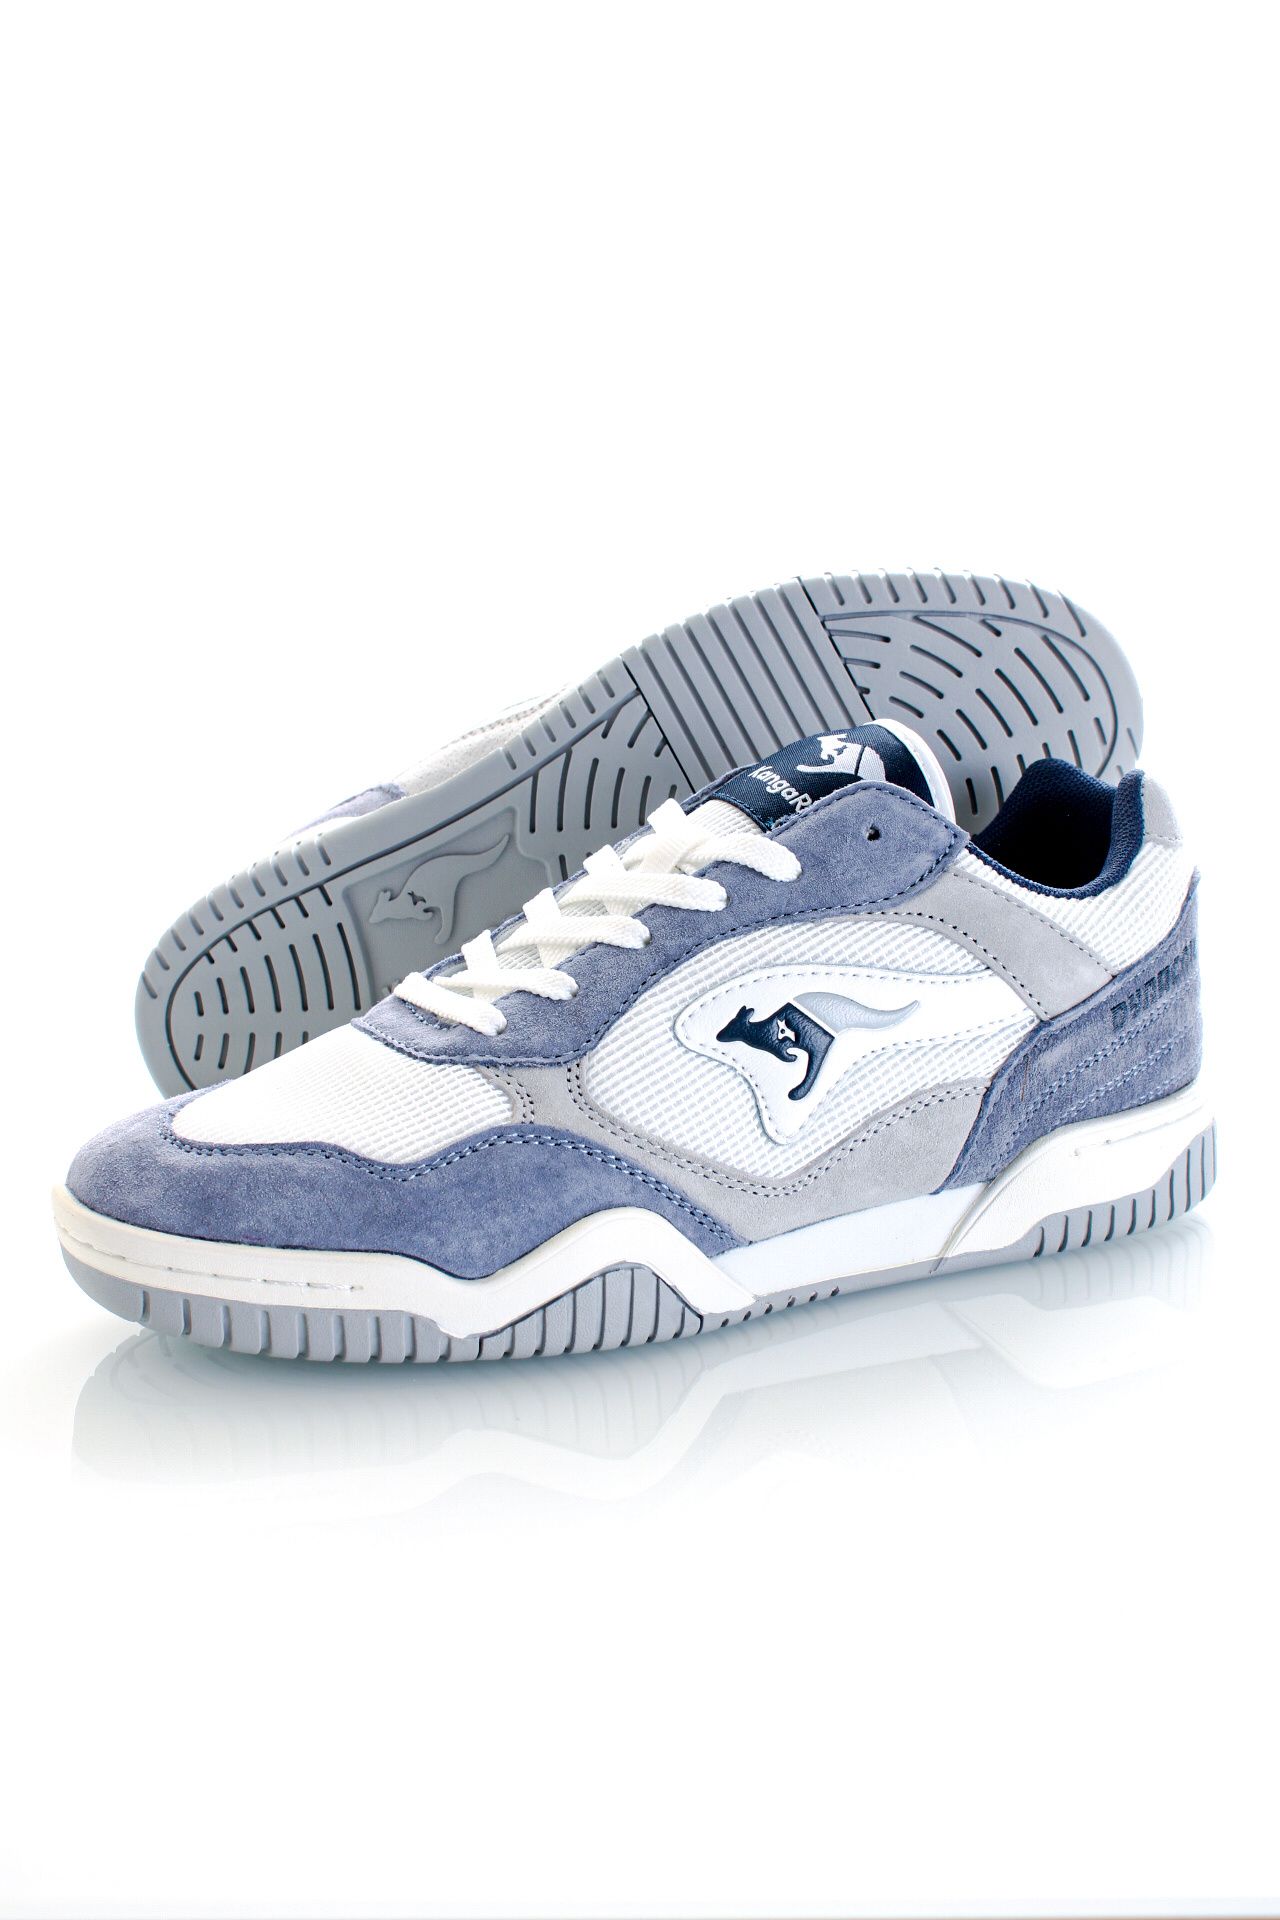 Afbeelding van KangaROOS Sneakers NET BLUE SKY / WHITE 47292